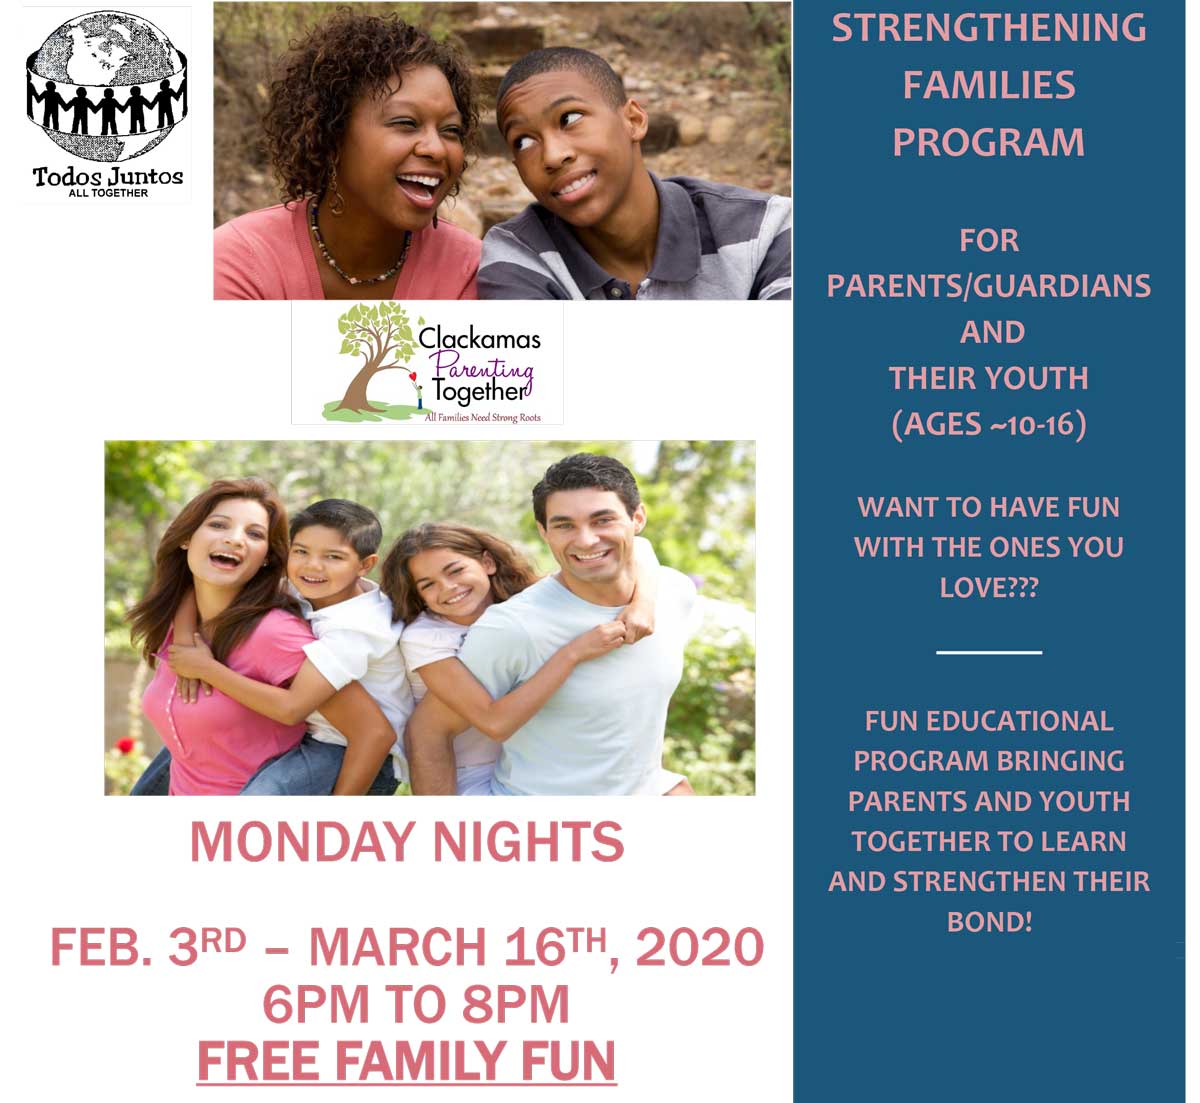 Strengthening Families Program<br>Feb. 3 - Mar. 16